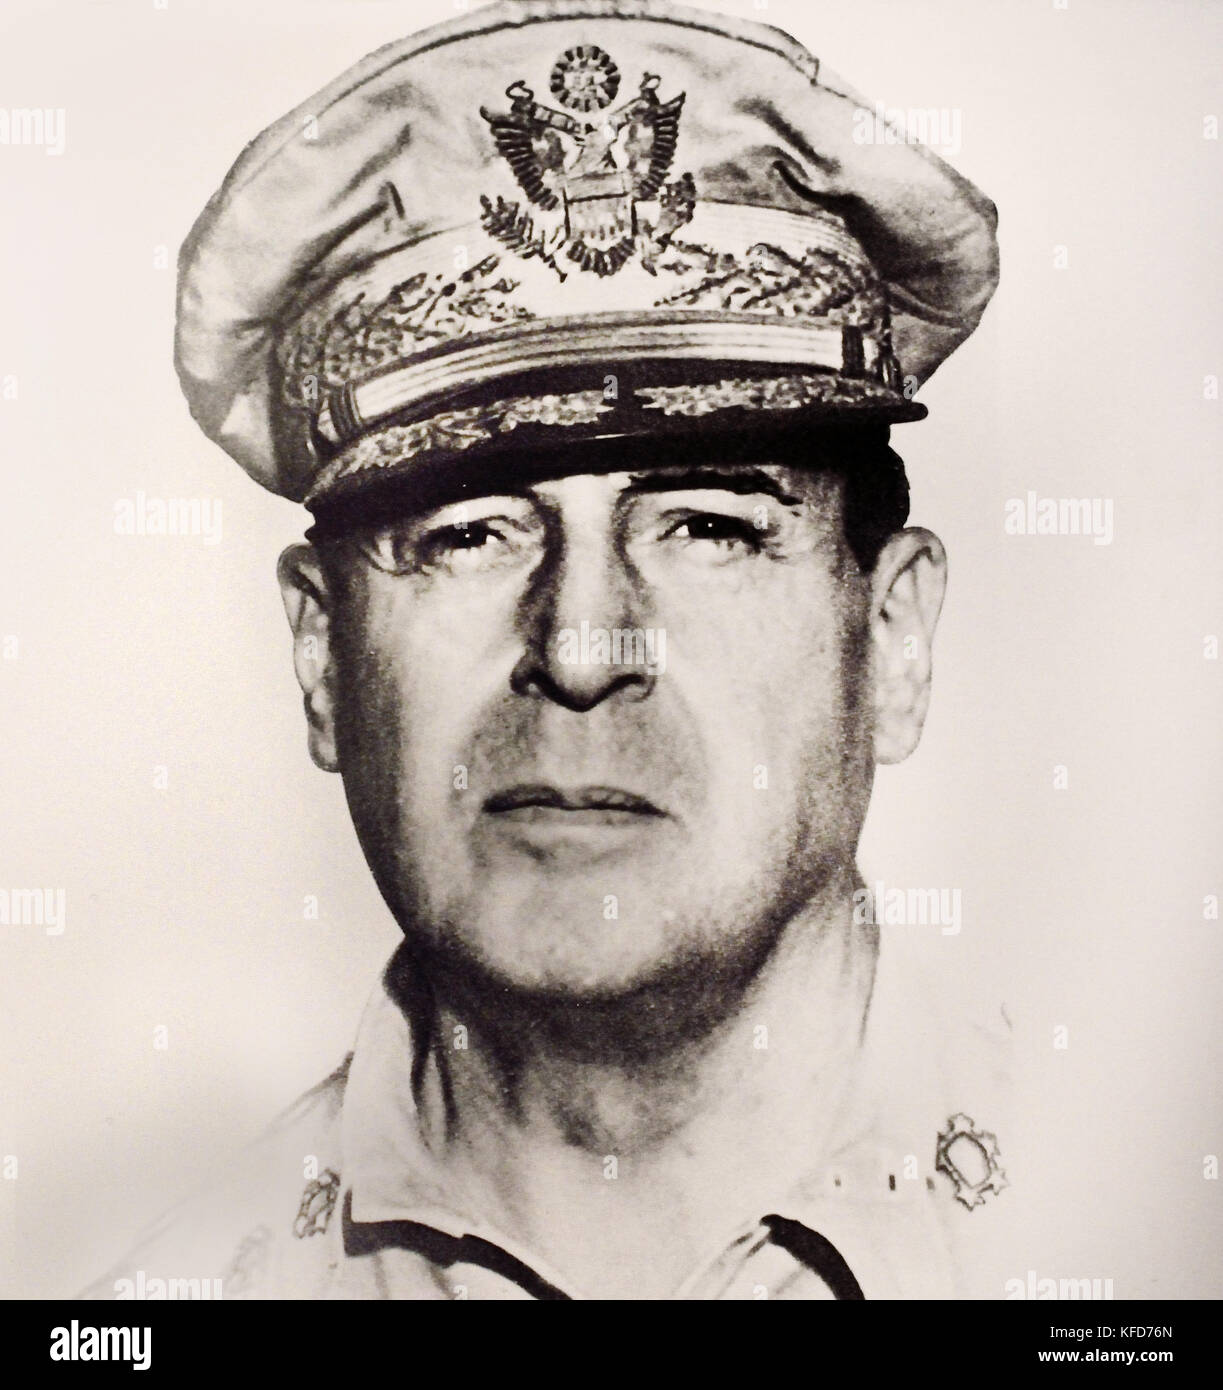 US-General Douglas MacArthur Weltkrieg II (Douglas MacArthur 1880 - 1964 war eine amerikanische 5-Sterne General und Feldmarschall der philippinischen Armee. Er war Chef des Stabes der United States Army während der 1930er und spielte eine bedeutende Rolle im Pazifik während des Zweiten Weltkrieges. ) Stockfoto